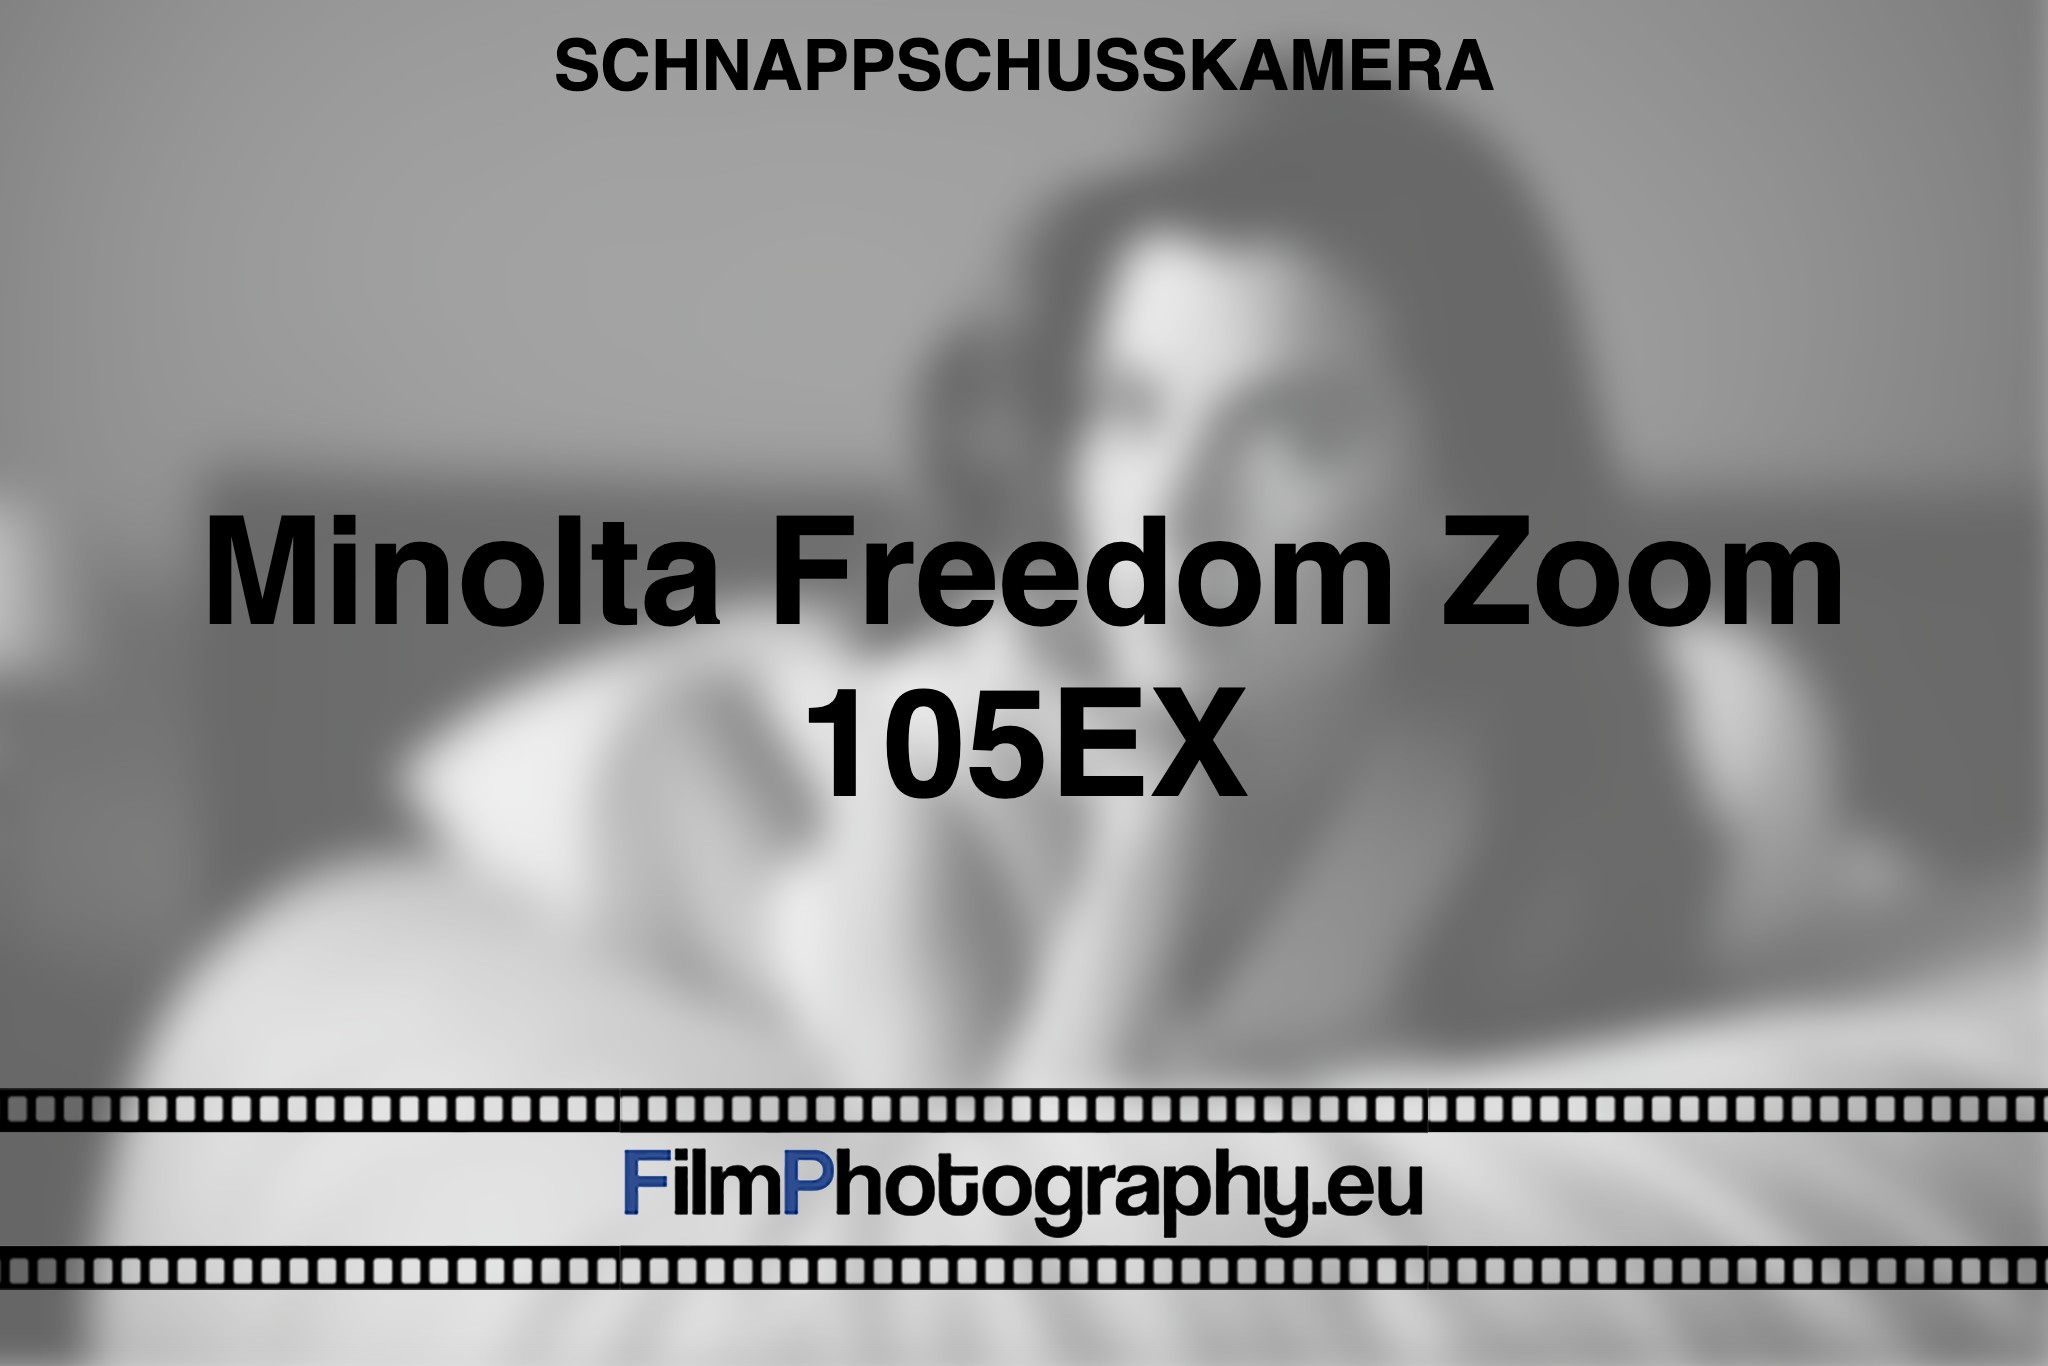 minolta-freedom-zoom-105ex-schnappschusskamera-bnv